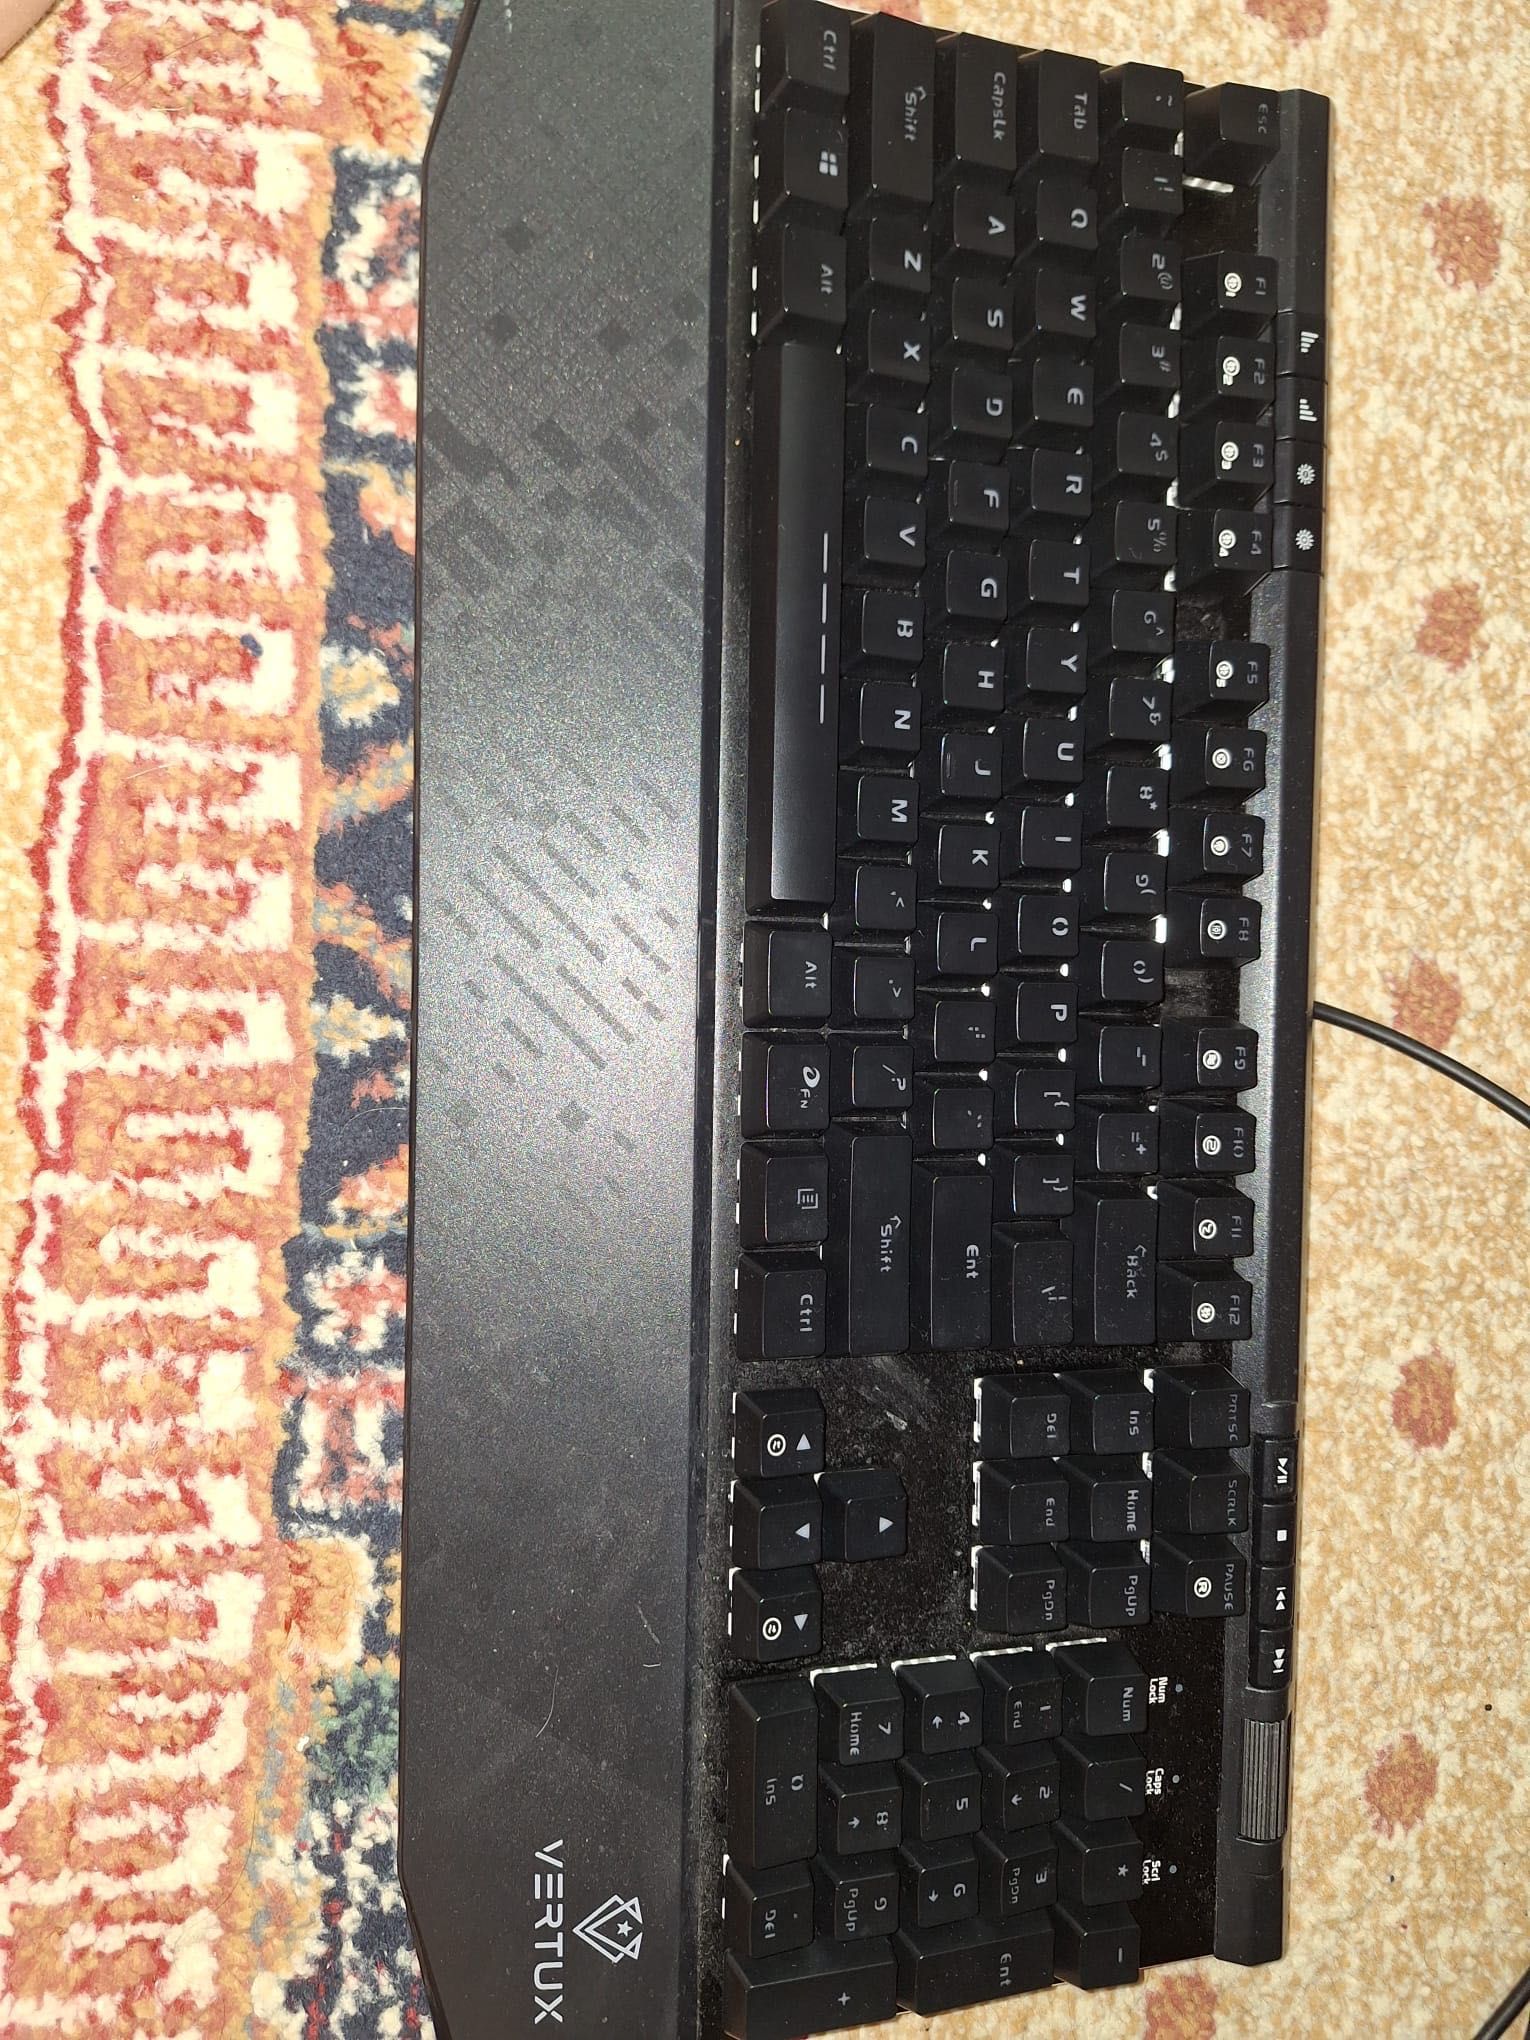 Tastatura Vertux 100% layout neagra